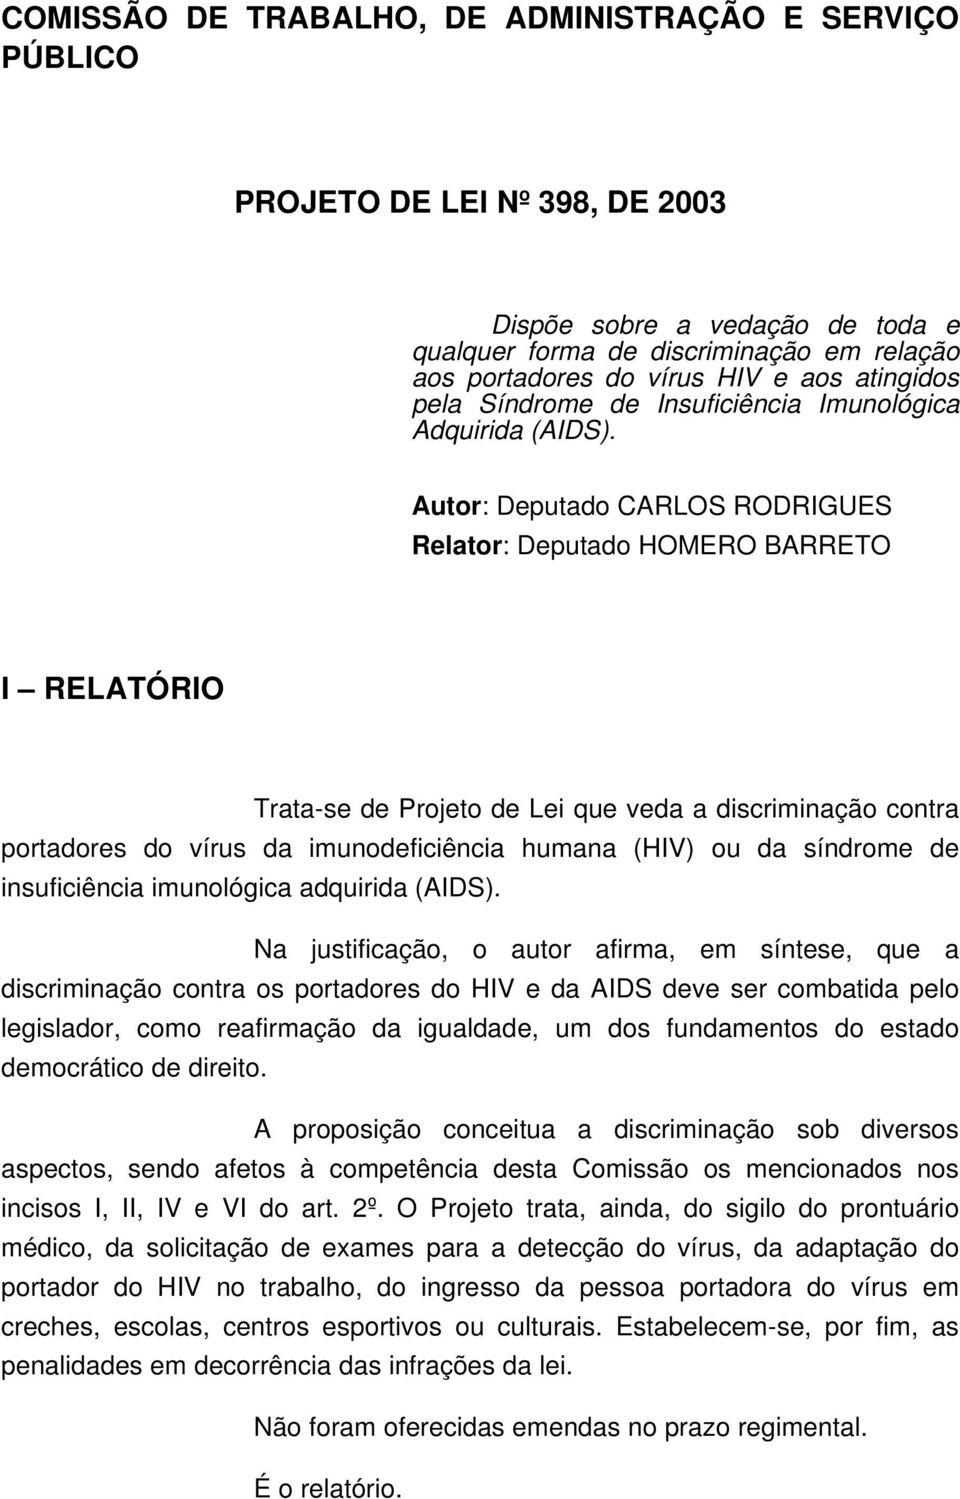 Autor: Deputado CARLOS RODRIGUES Relator: Deputado HOMERO BARRETO I RELATÓRIO Trata-se de Projeto de Lei que veda a discriminação contra portadores do vírus da imunodeficiência humana (HIV) ou da